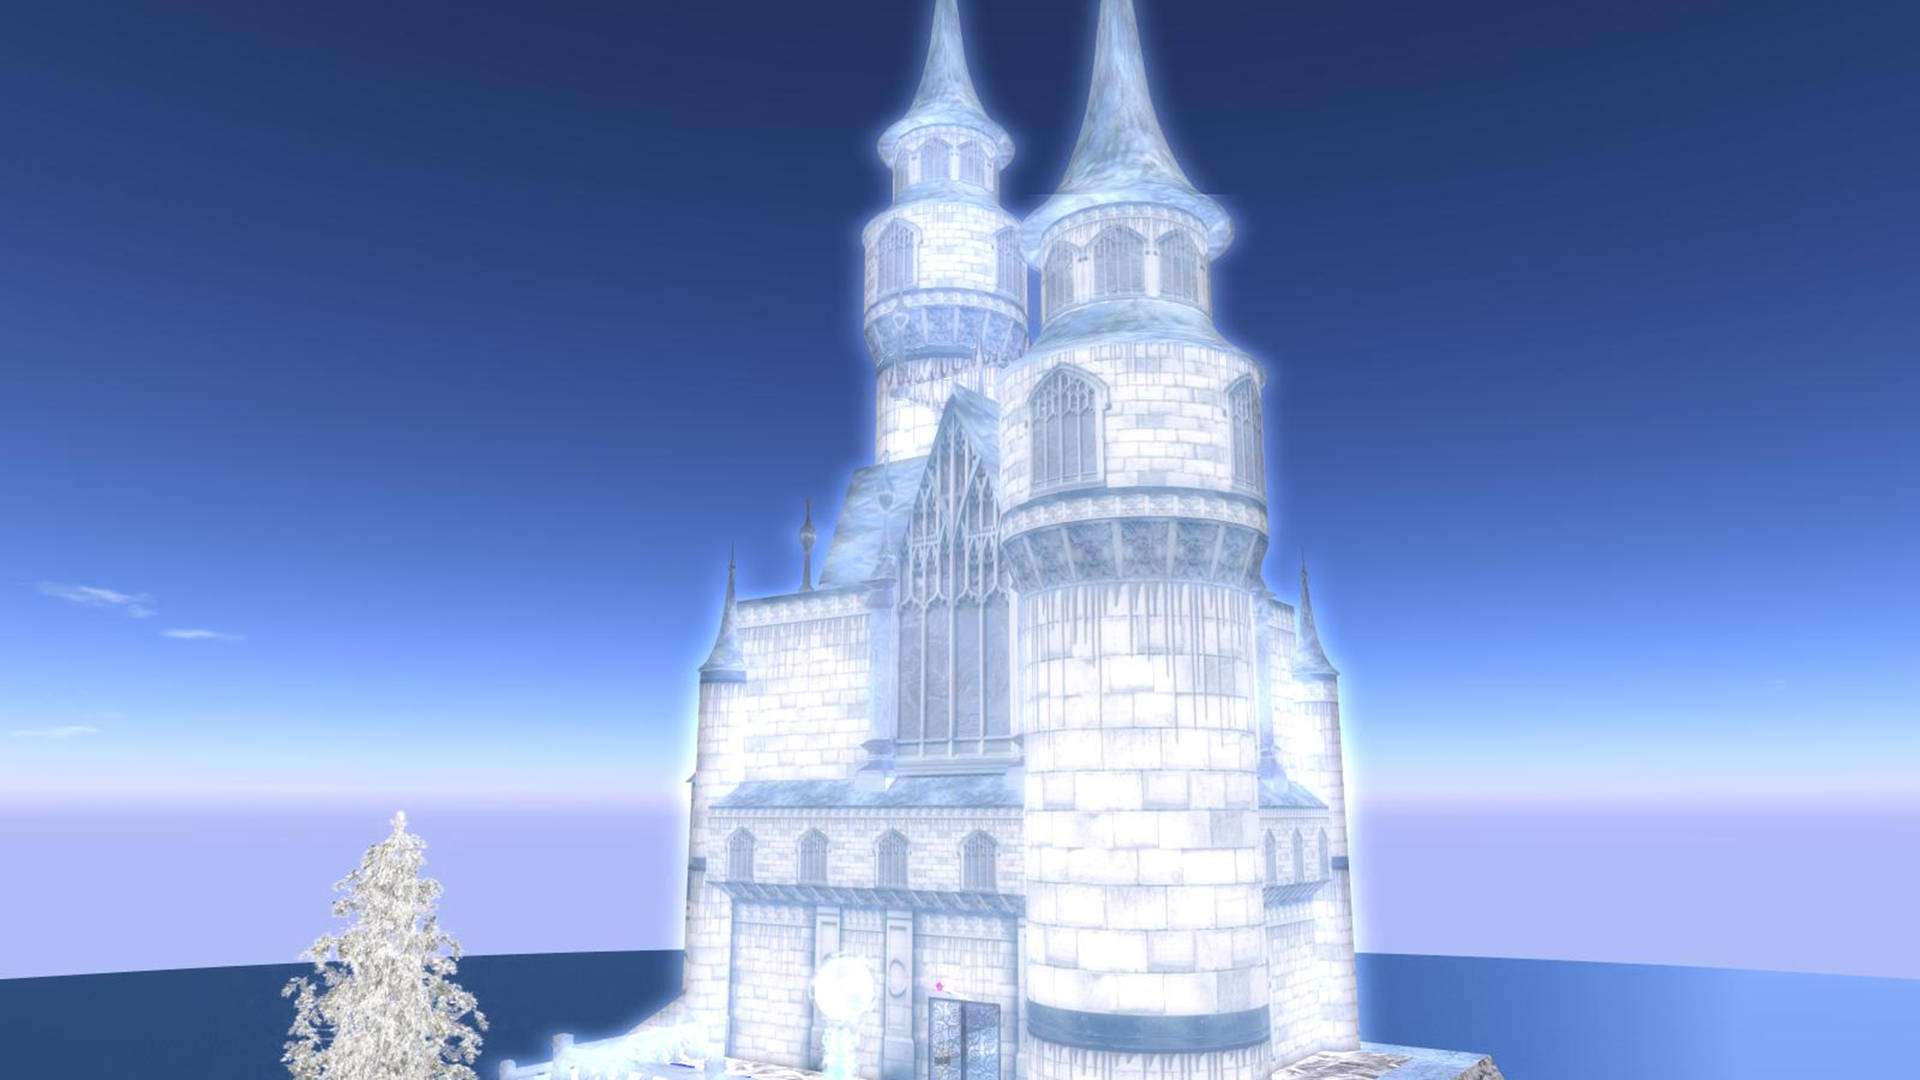 Glowing Frozen Castle Background